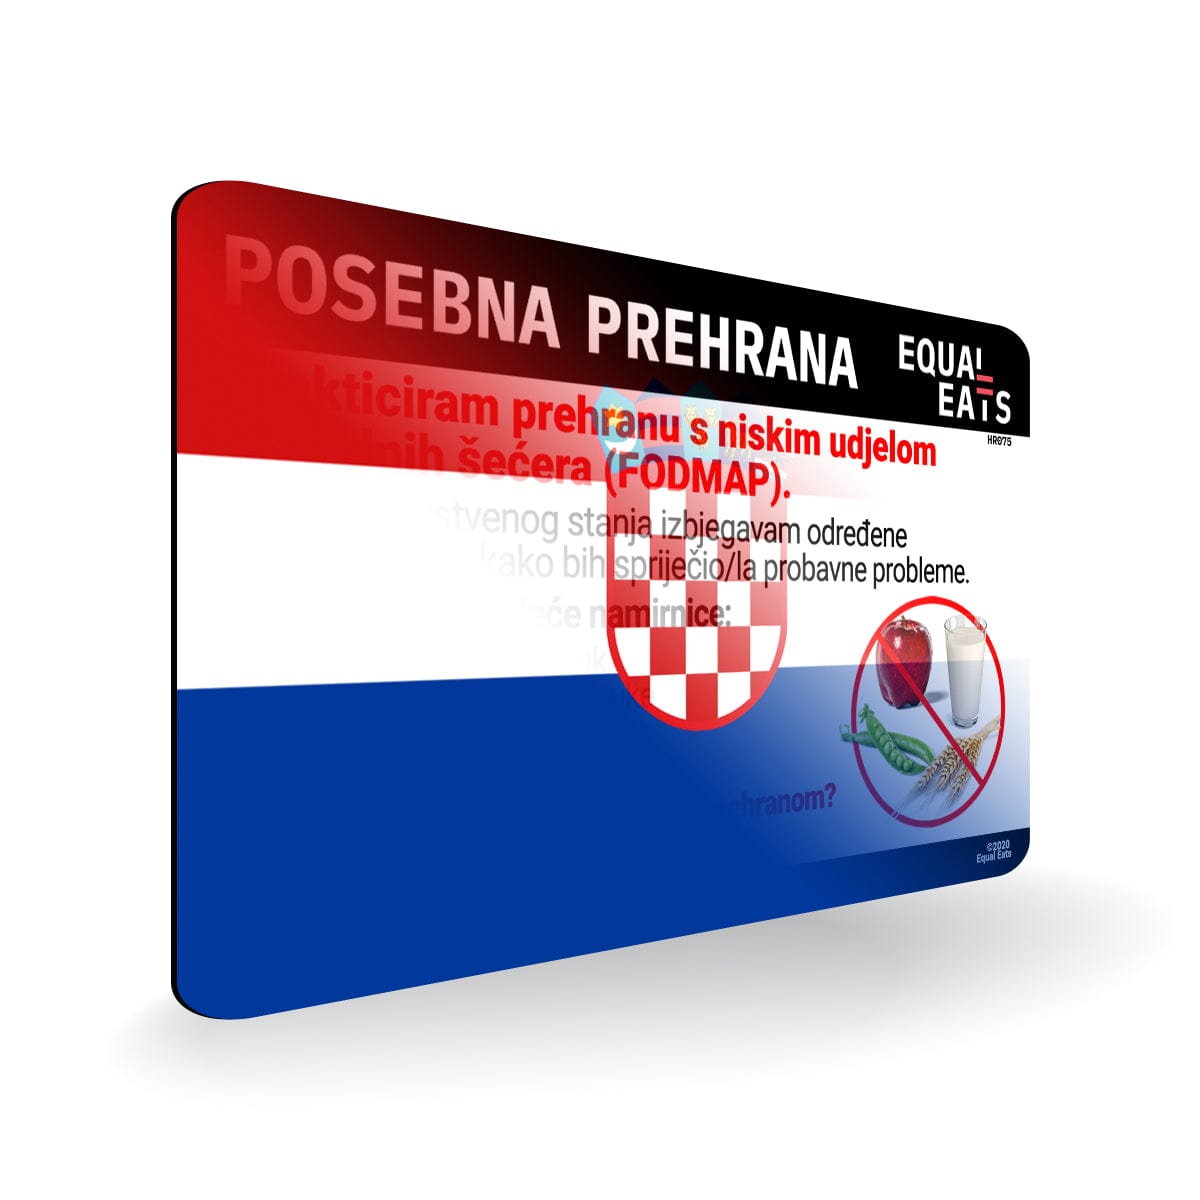 Low FODMAP Diet in Croatian. Low FODMAP Diet Card for Croatia